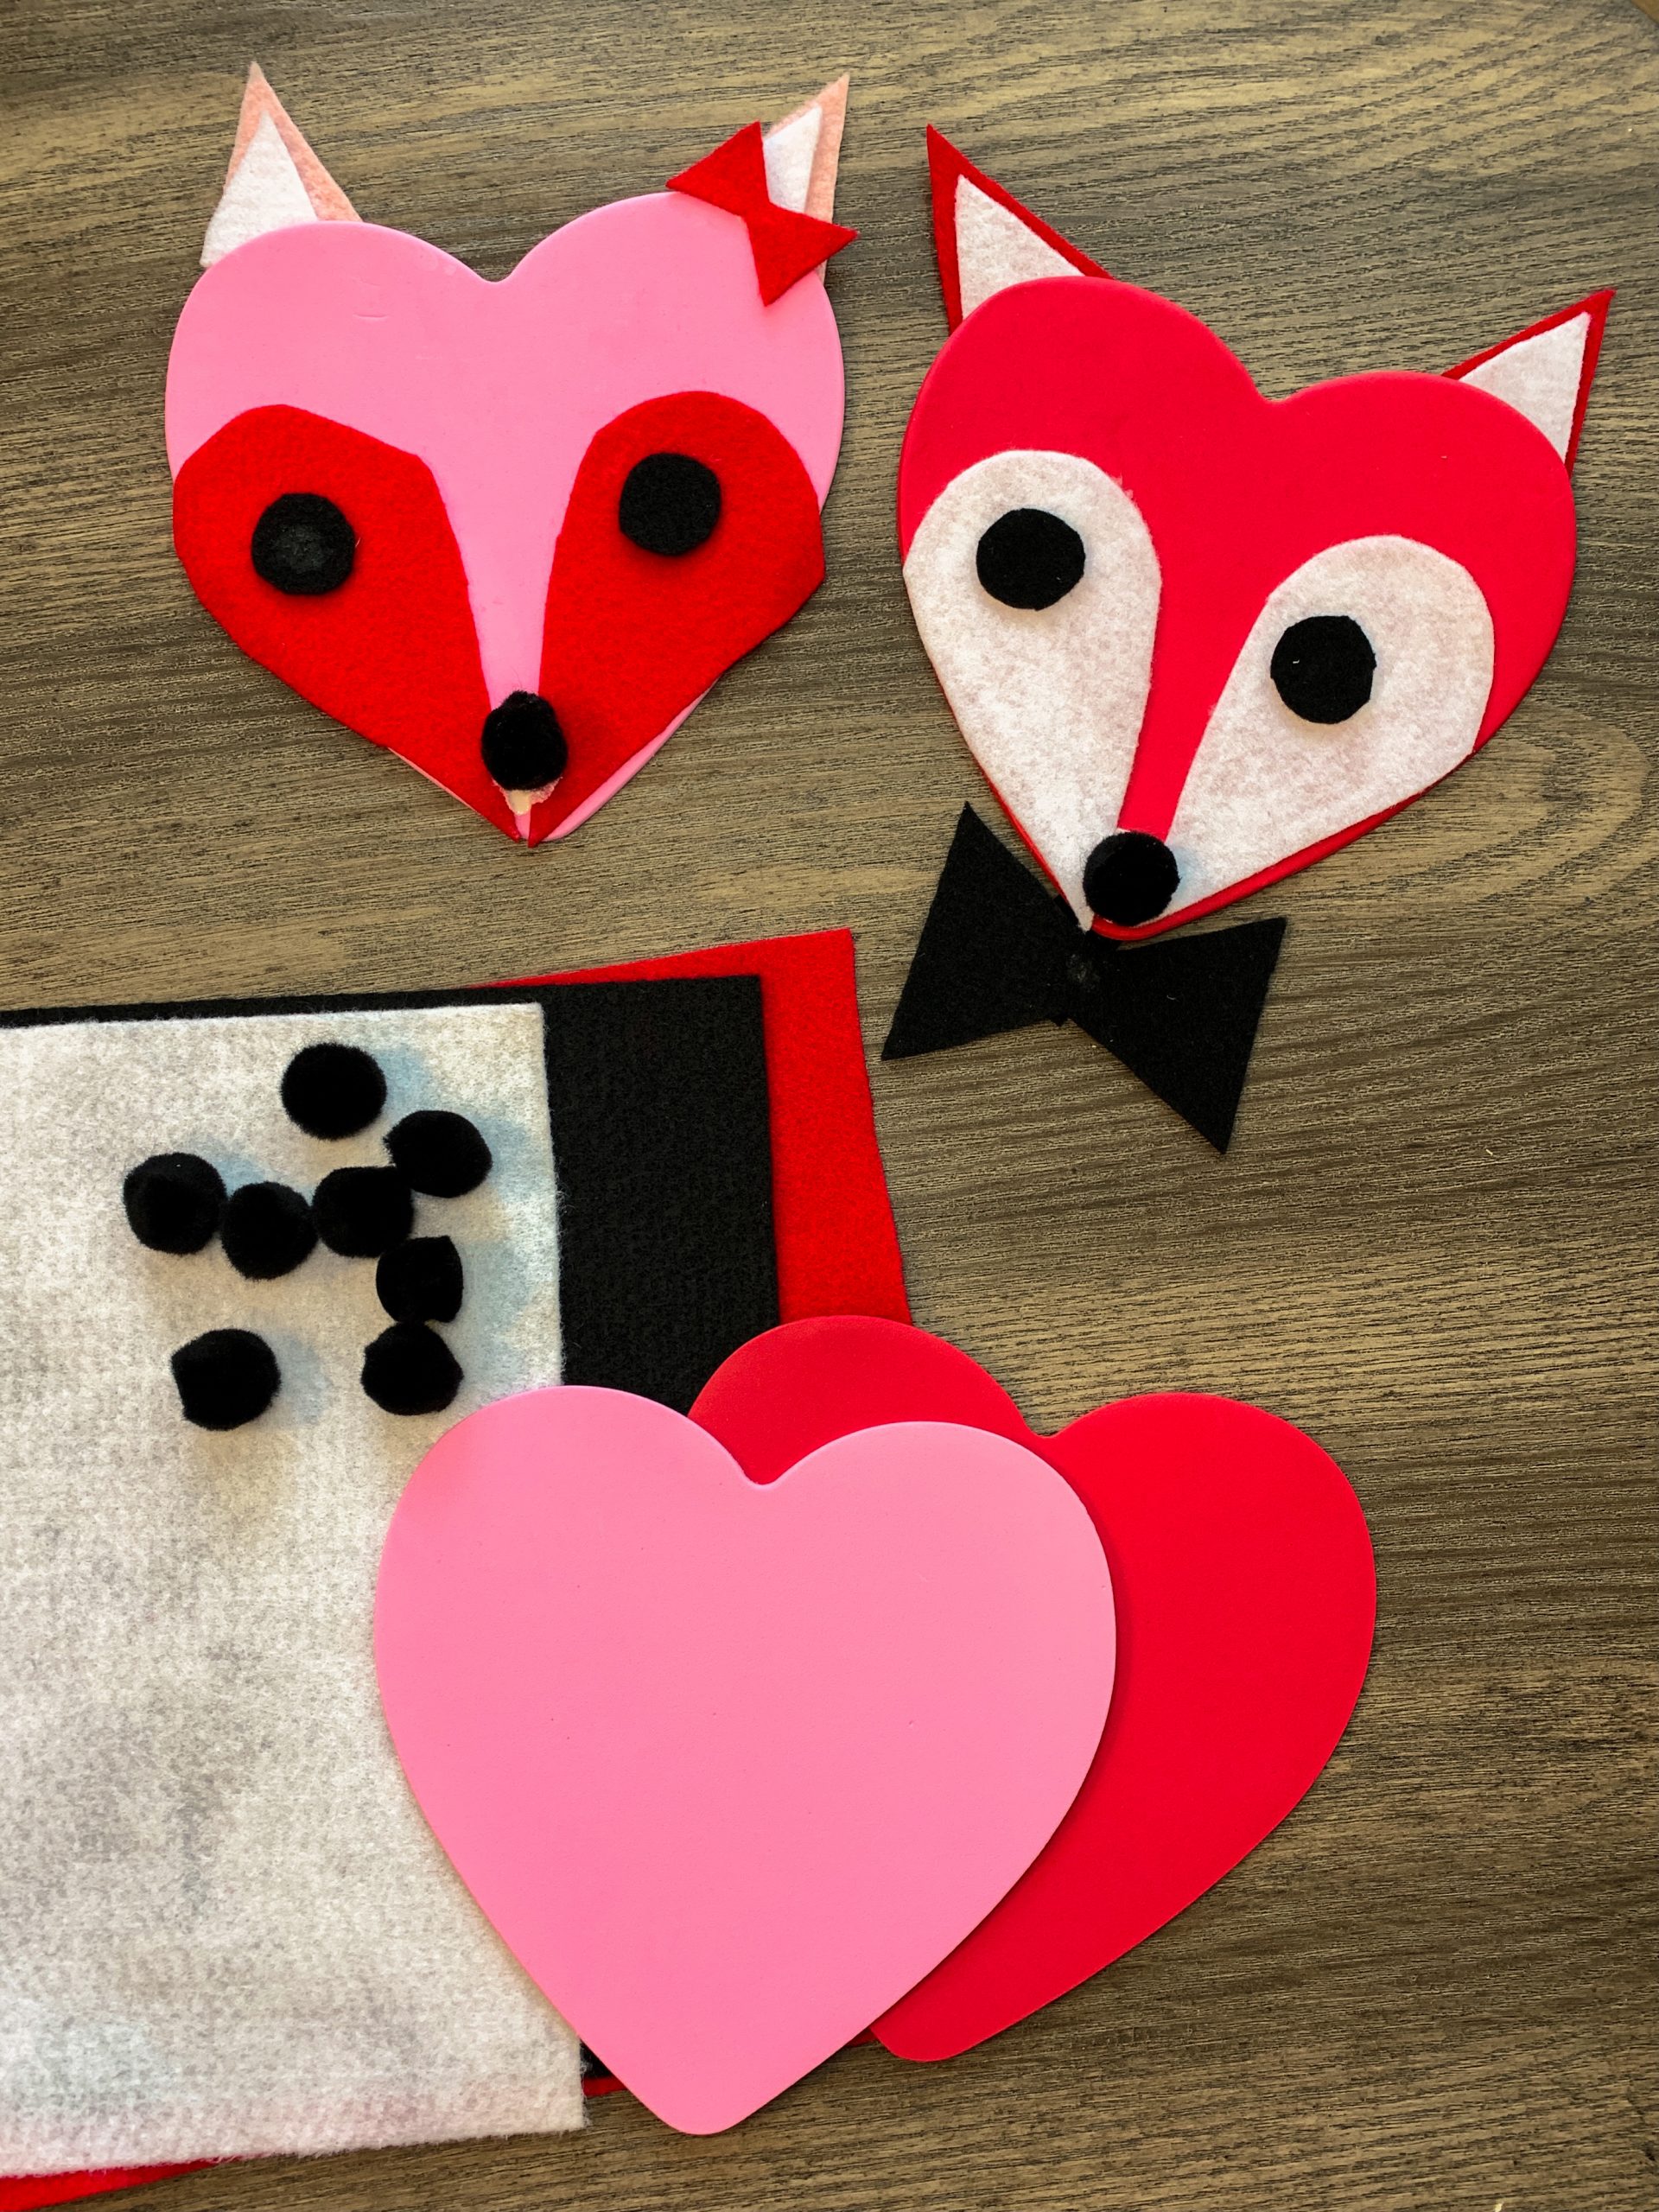 4-easy-valentine-s-day-crafts